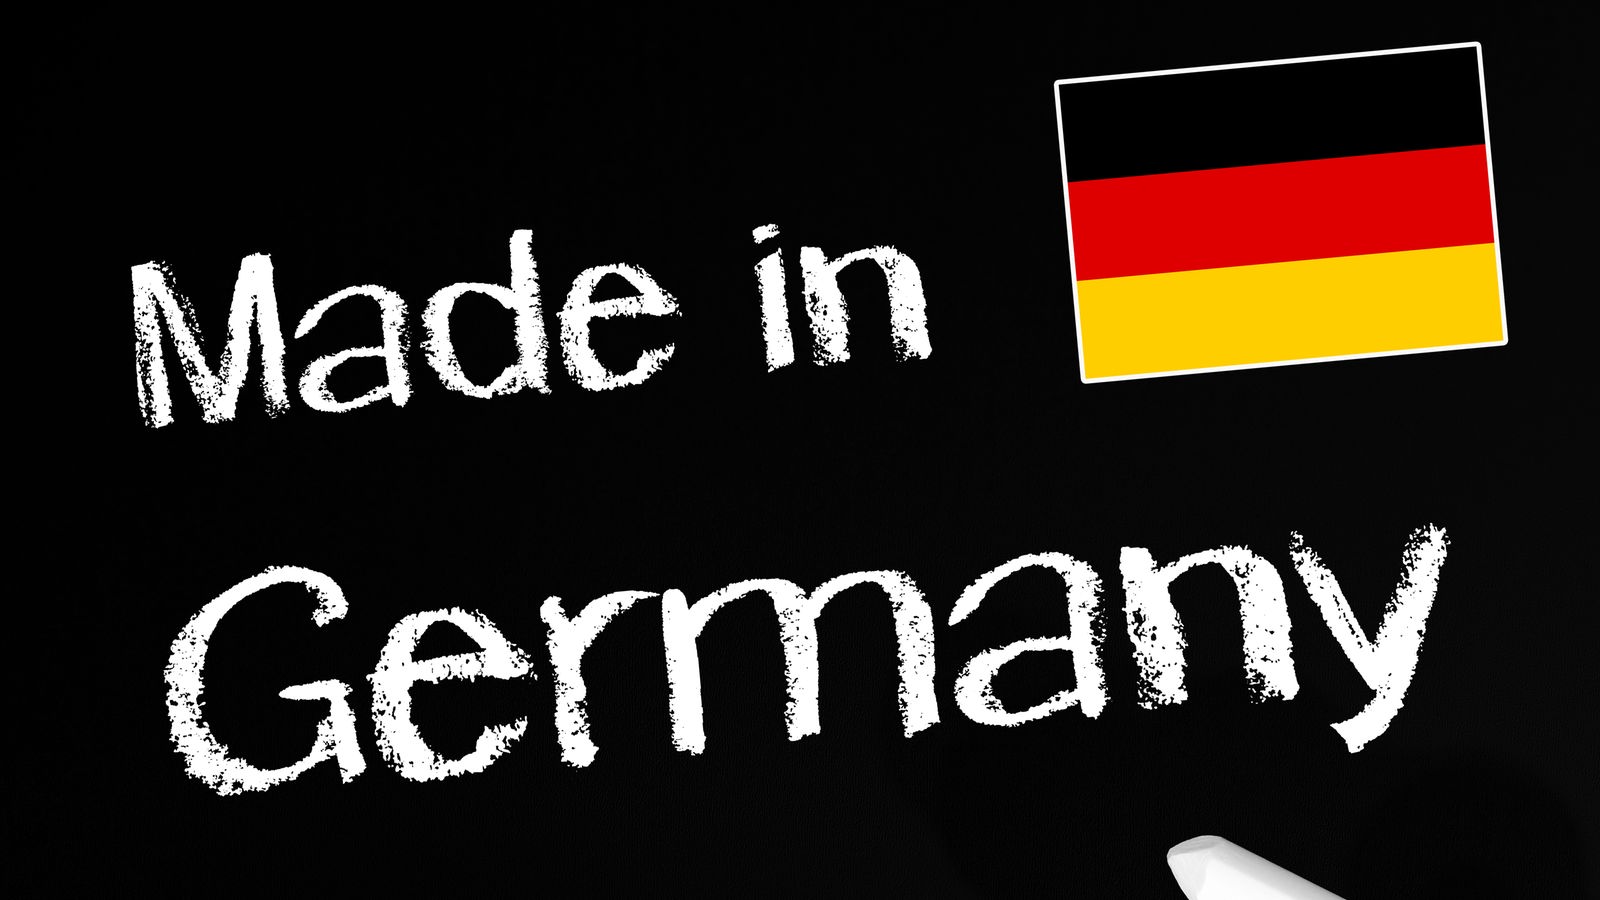 Grafik: Auf schwarzem Hintergrund steht mit weißer Kreide "Made in Germany" geschrieben.